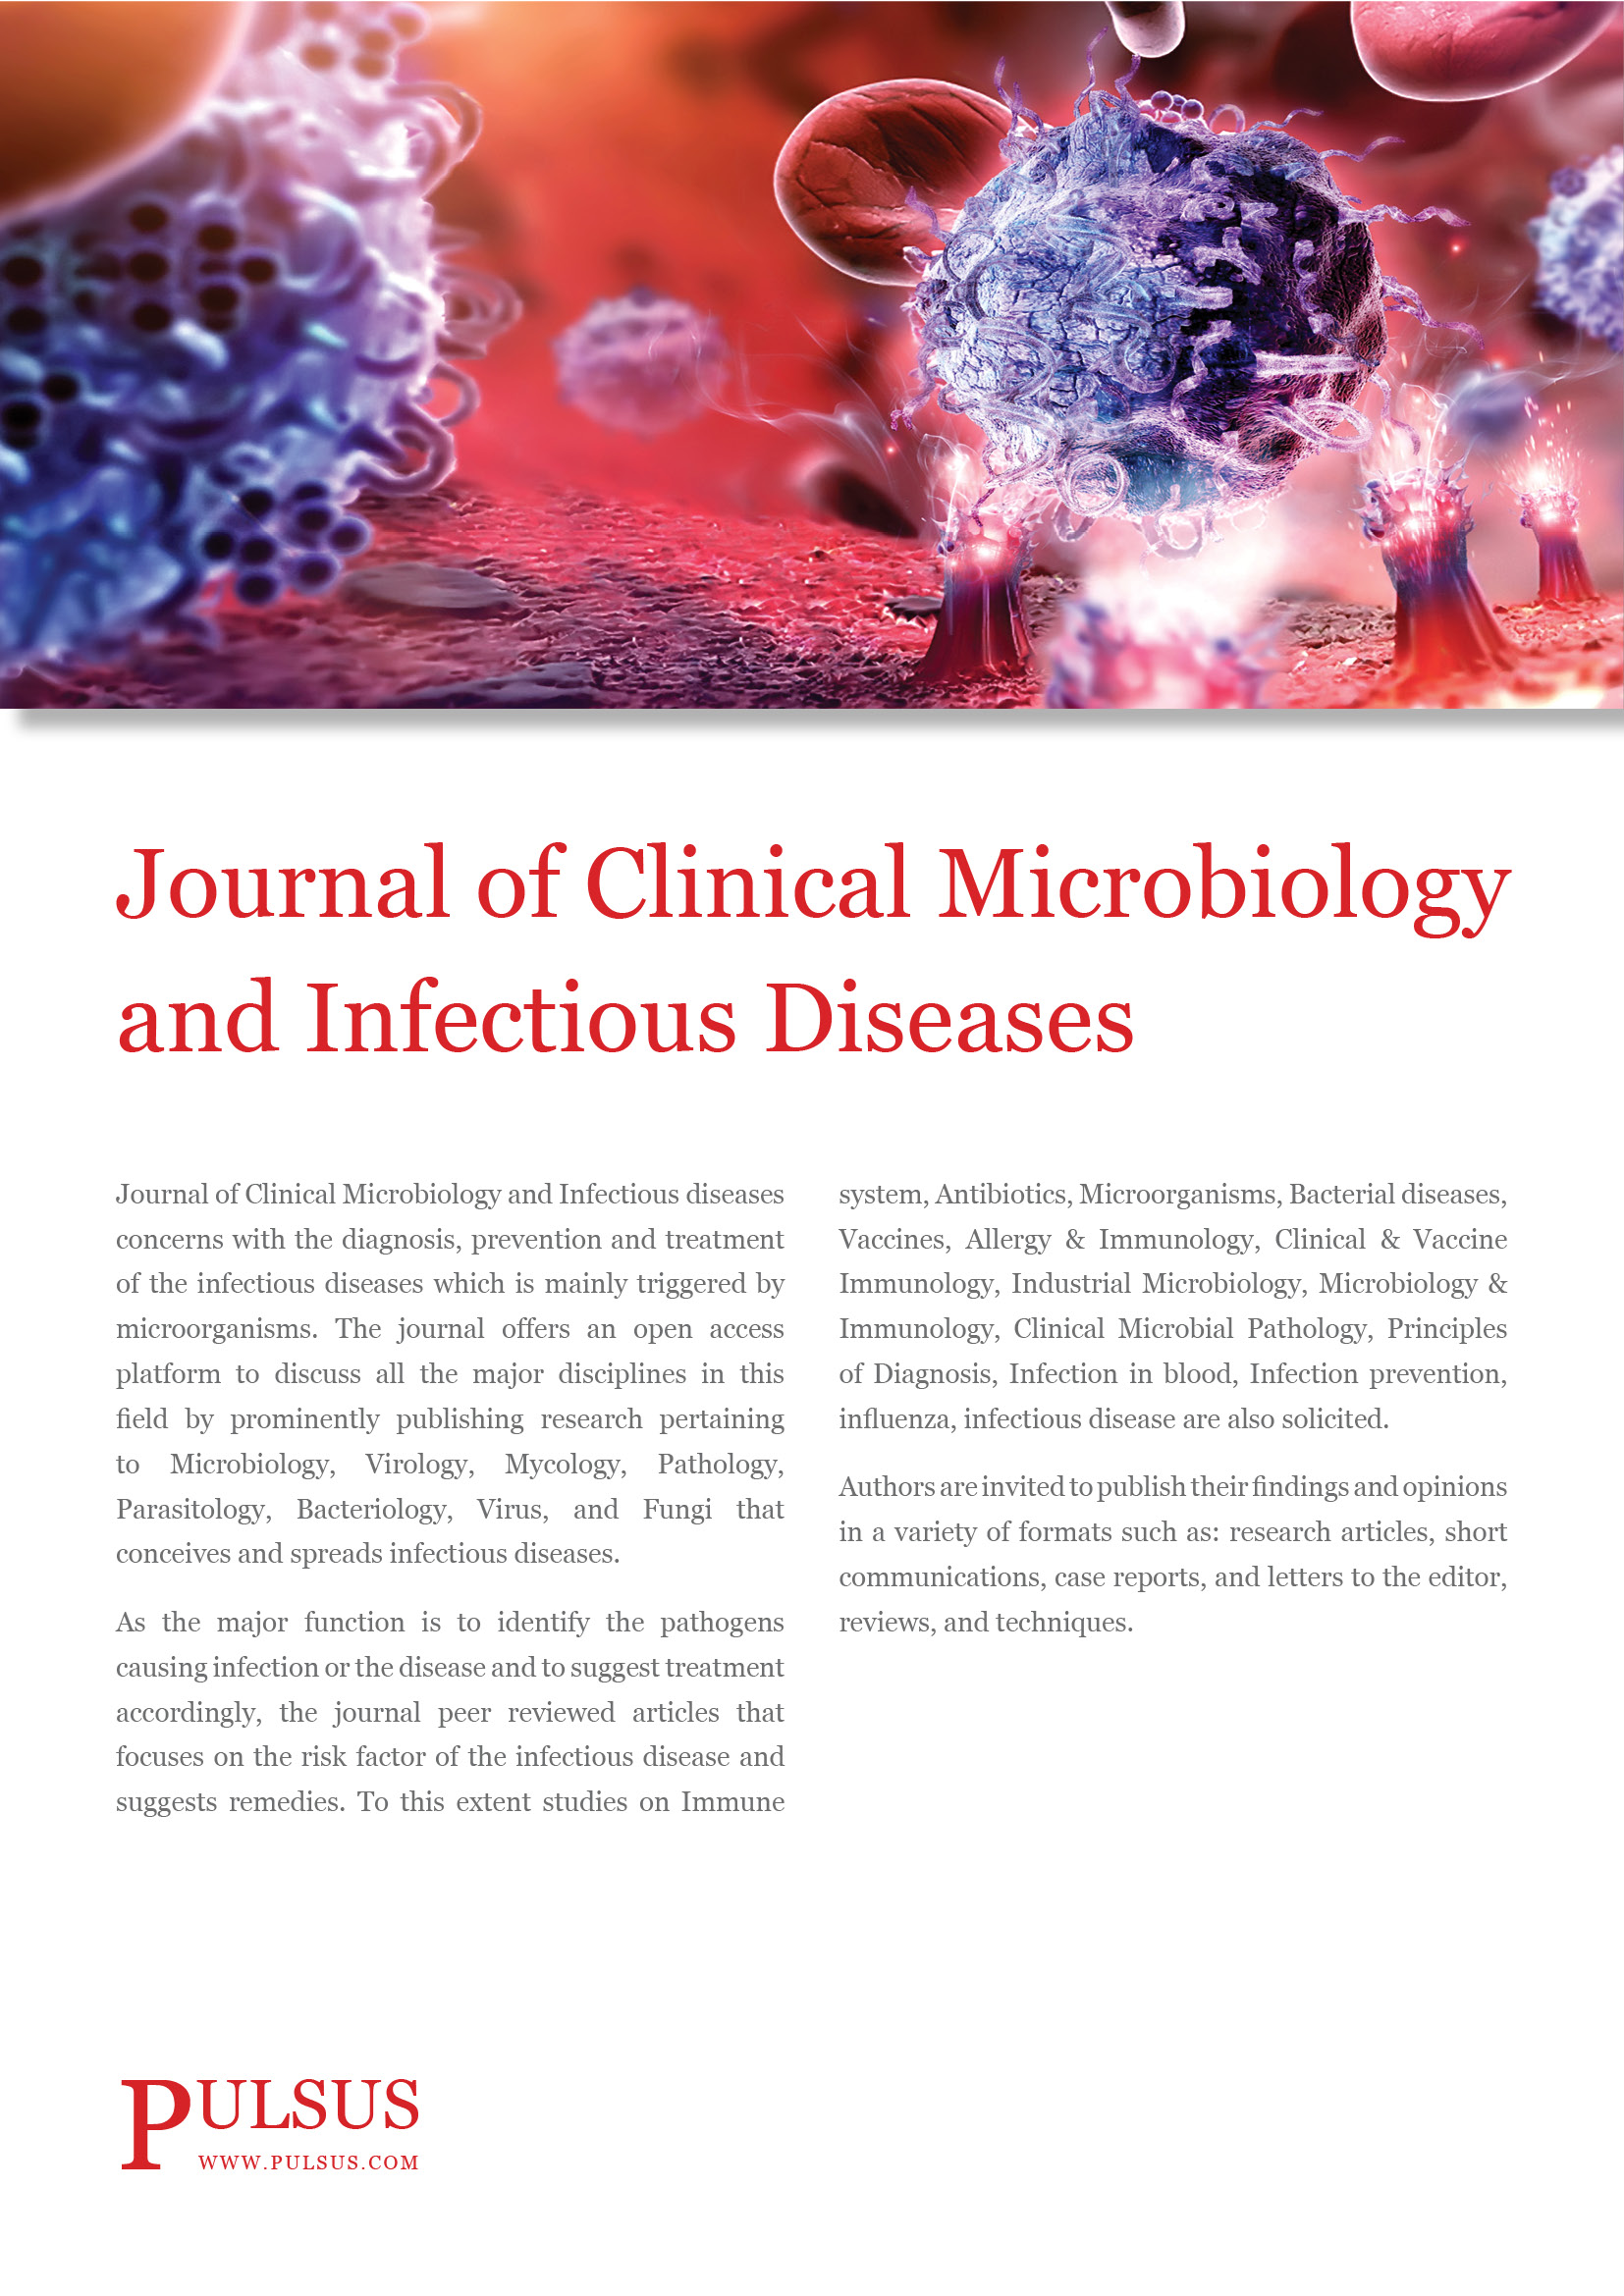 Revista de Microbiología Clínica y Enfermedades Infecciosas